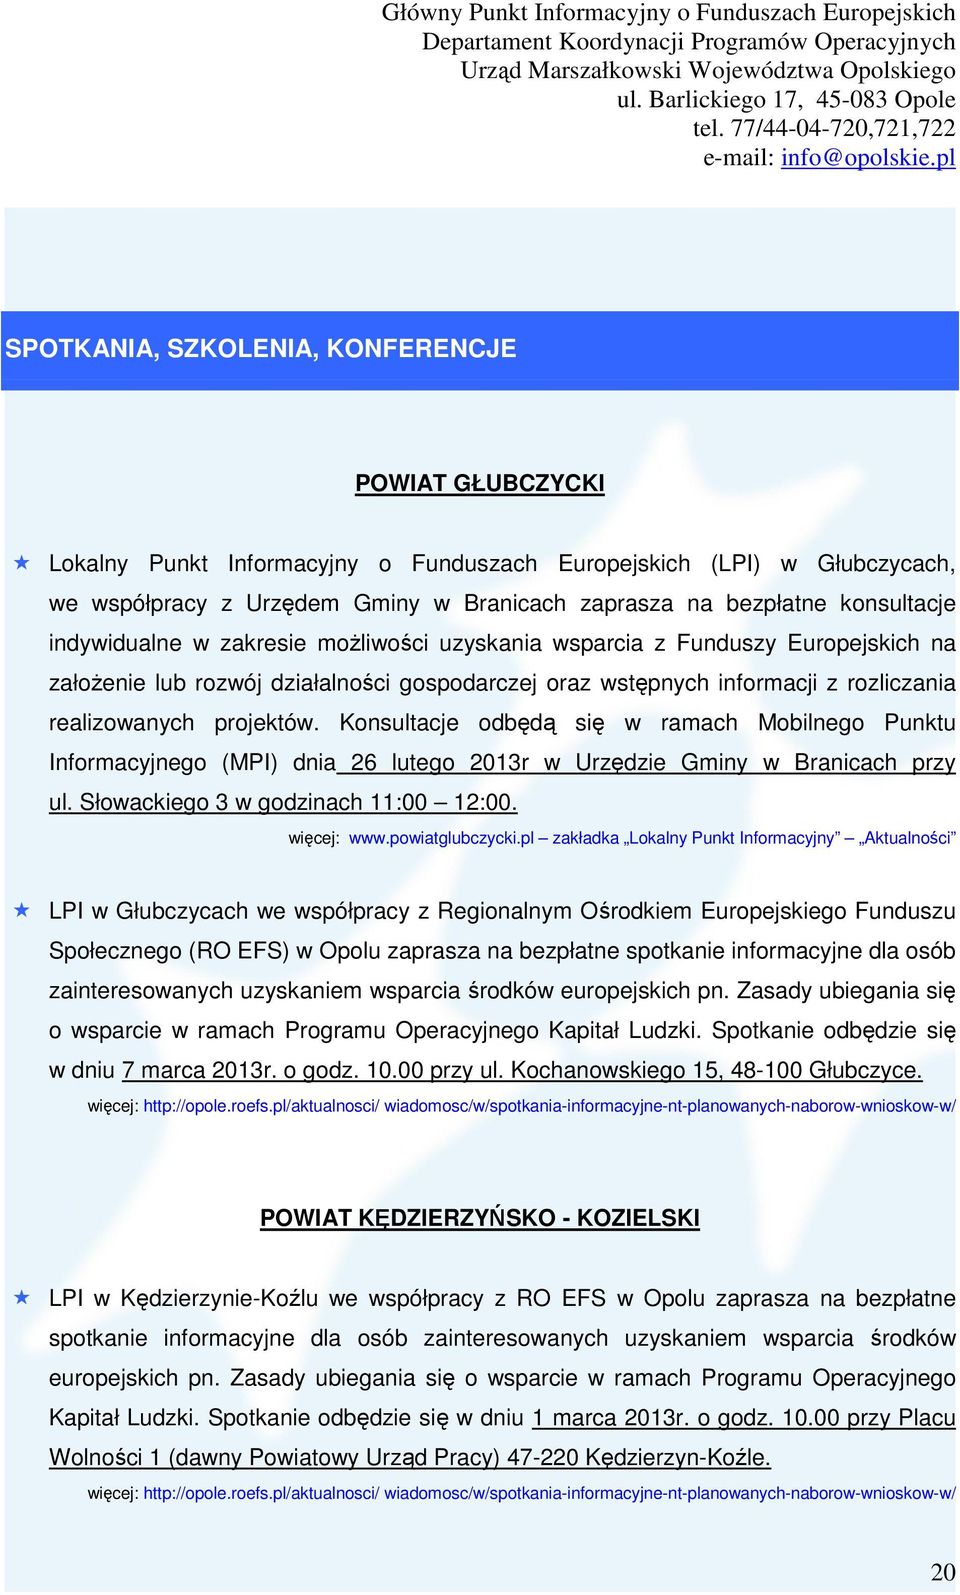 projektów. Konsultacje odbędą się w ramach Mobilnego Punktu Informacyjnego (MPI) dnia 26 lutego 2013r w Urzędzie Gminy w Branicach przy ul. Słowackiego 3 w godzinach 11:00 12:00. więcej: www.